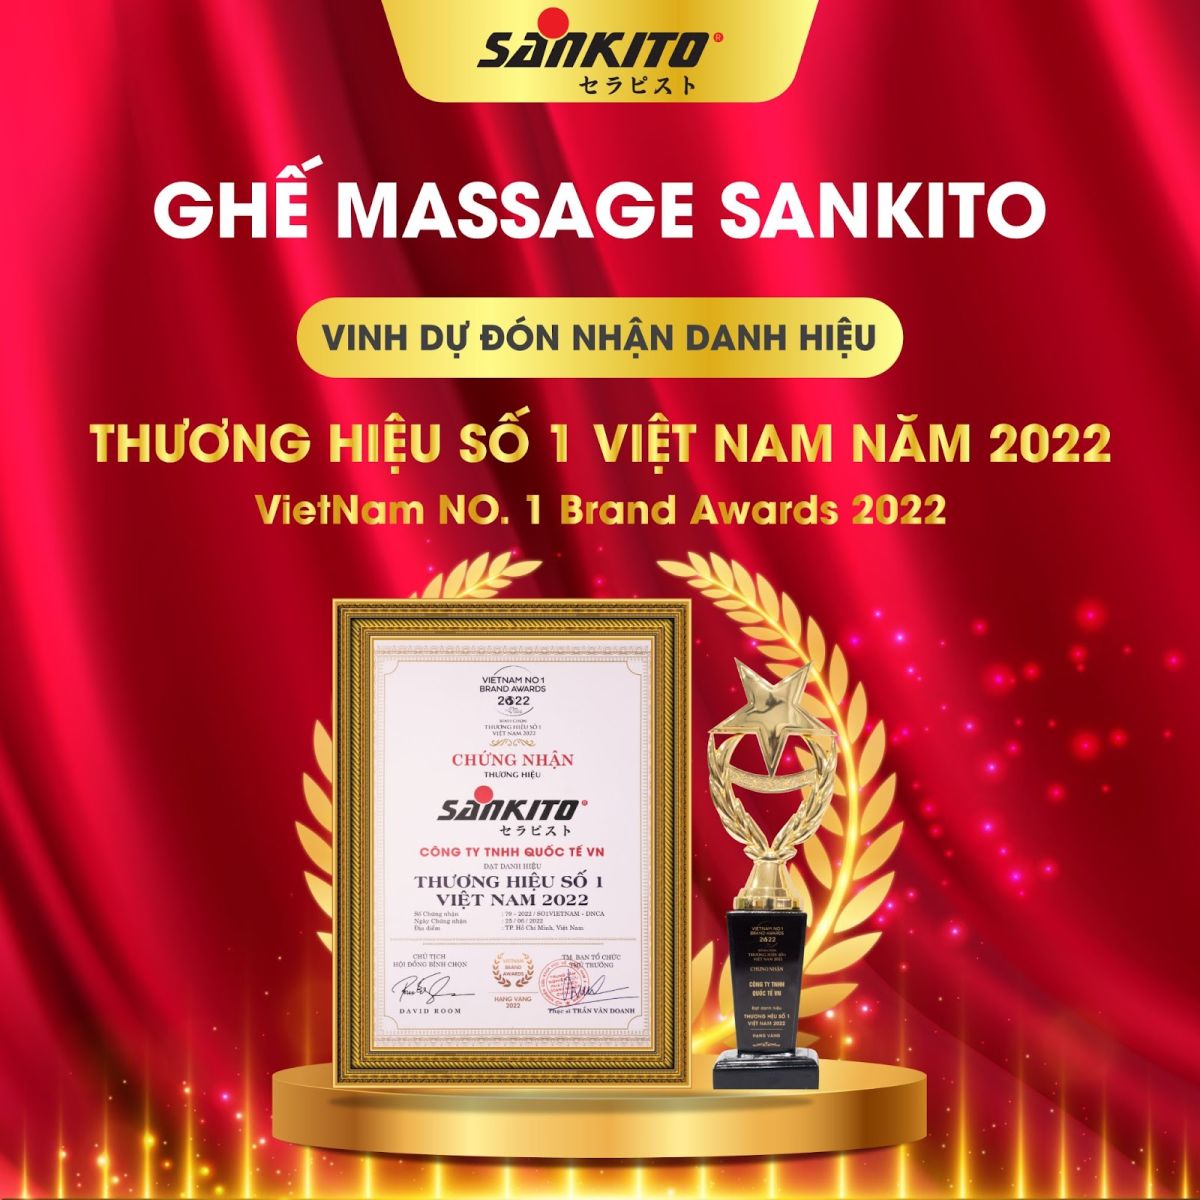 ghế massage sankito đạt danh hiệu thương hiệu số 1 việt nam 2022